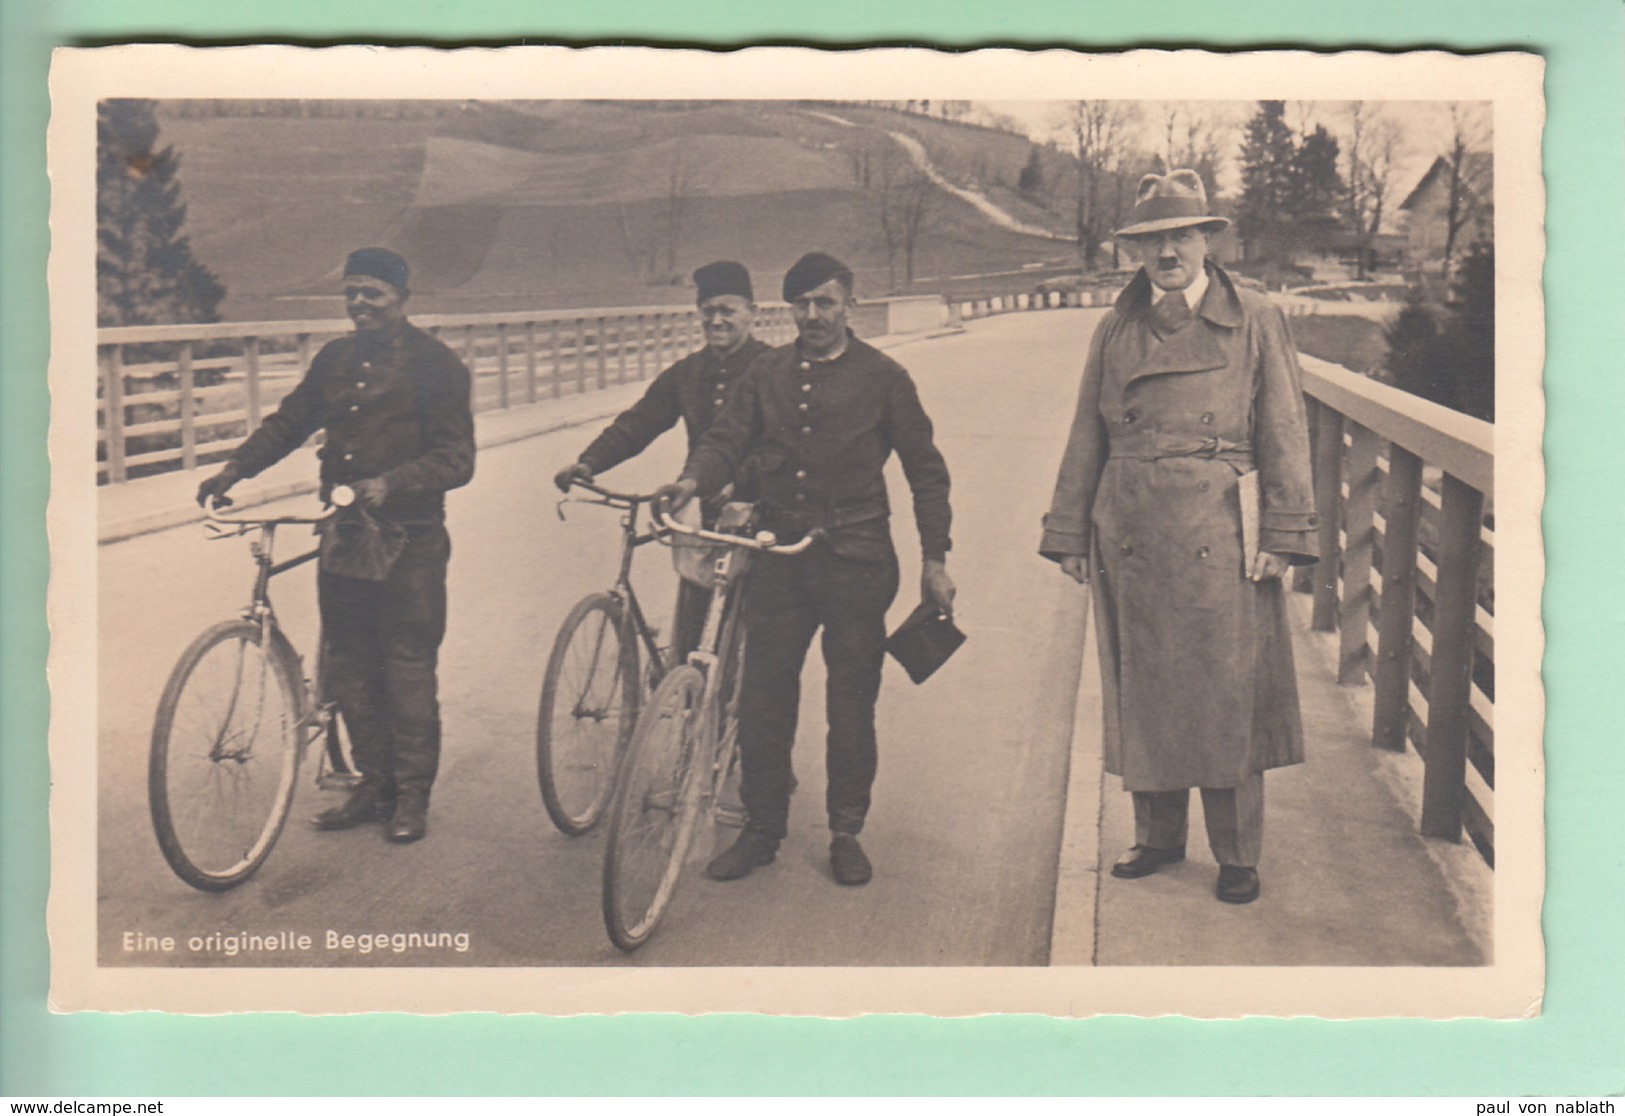 Adolf Hitler In Zivil + Drei Schornsteinfeger + Fahrrad # Fahrräder # Stempel Ammer-Hochbrücke # Photo-Hoffmann - Briefe U. Dokumente